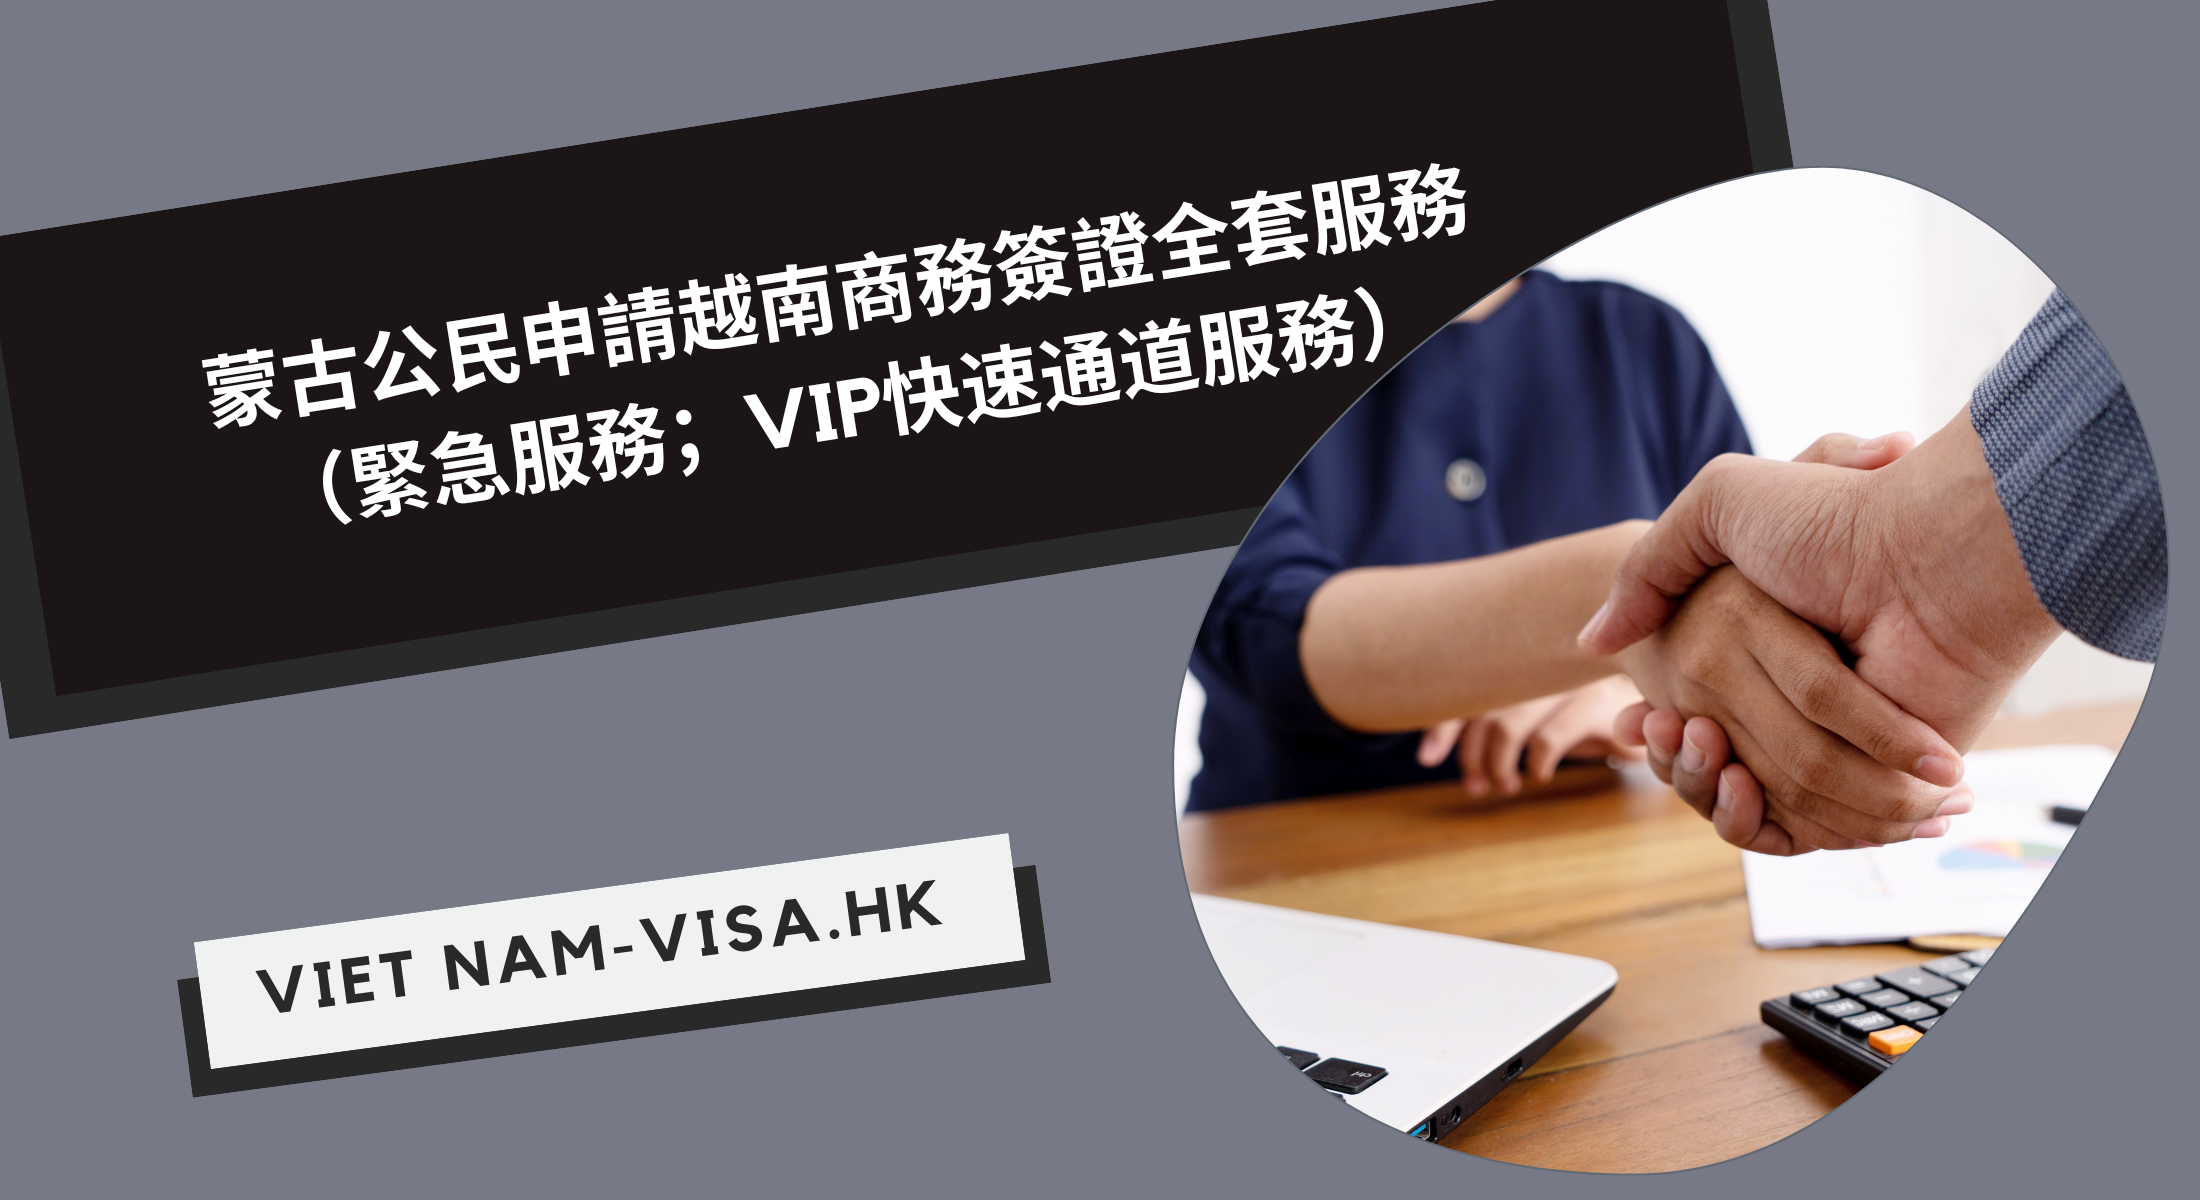 蒙古公民申請越南商務簽證全套服務